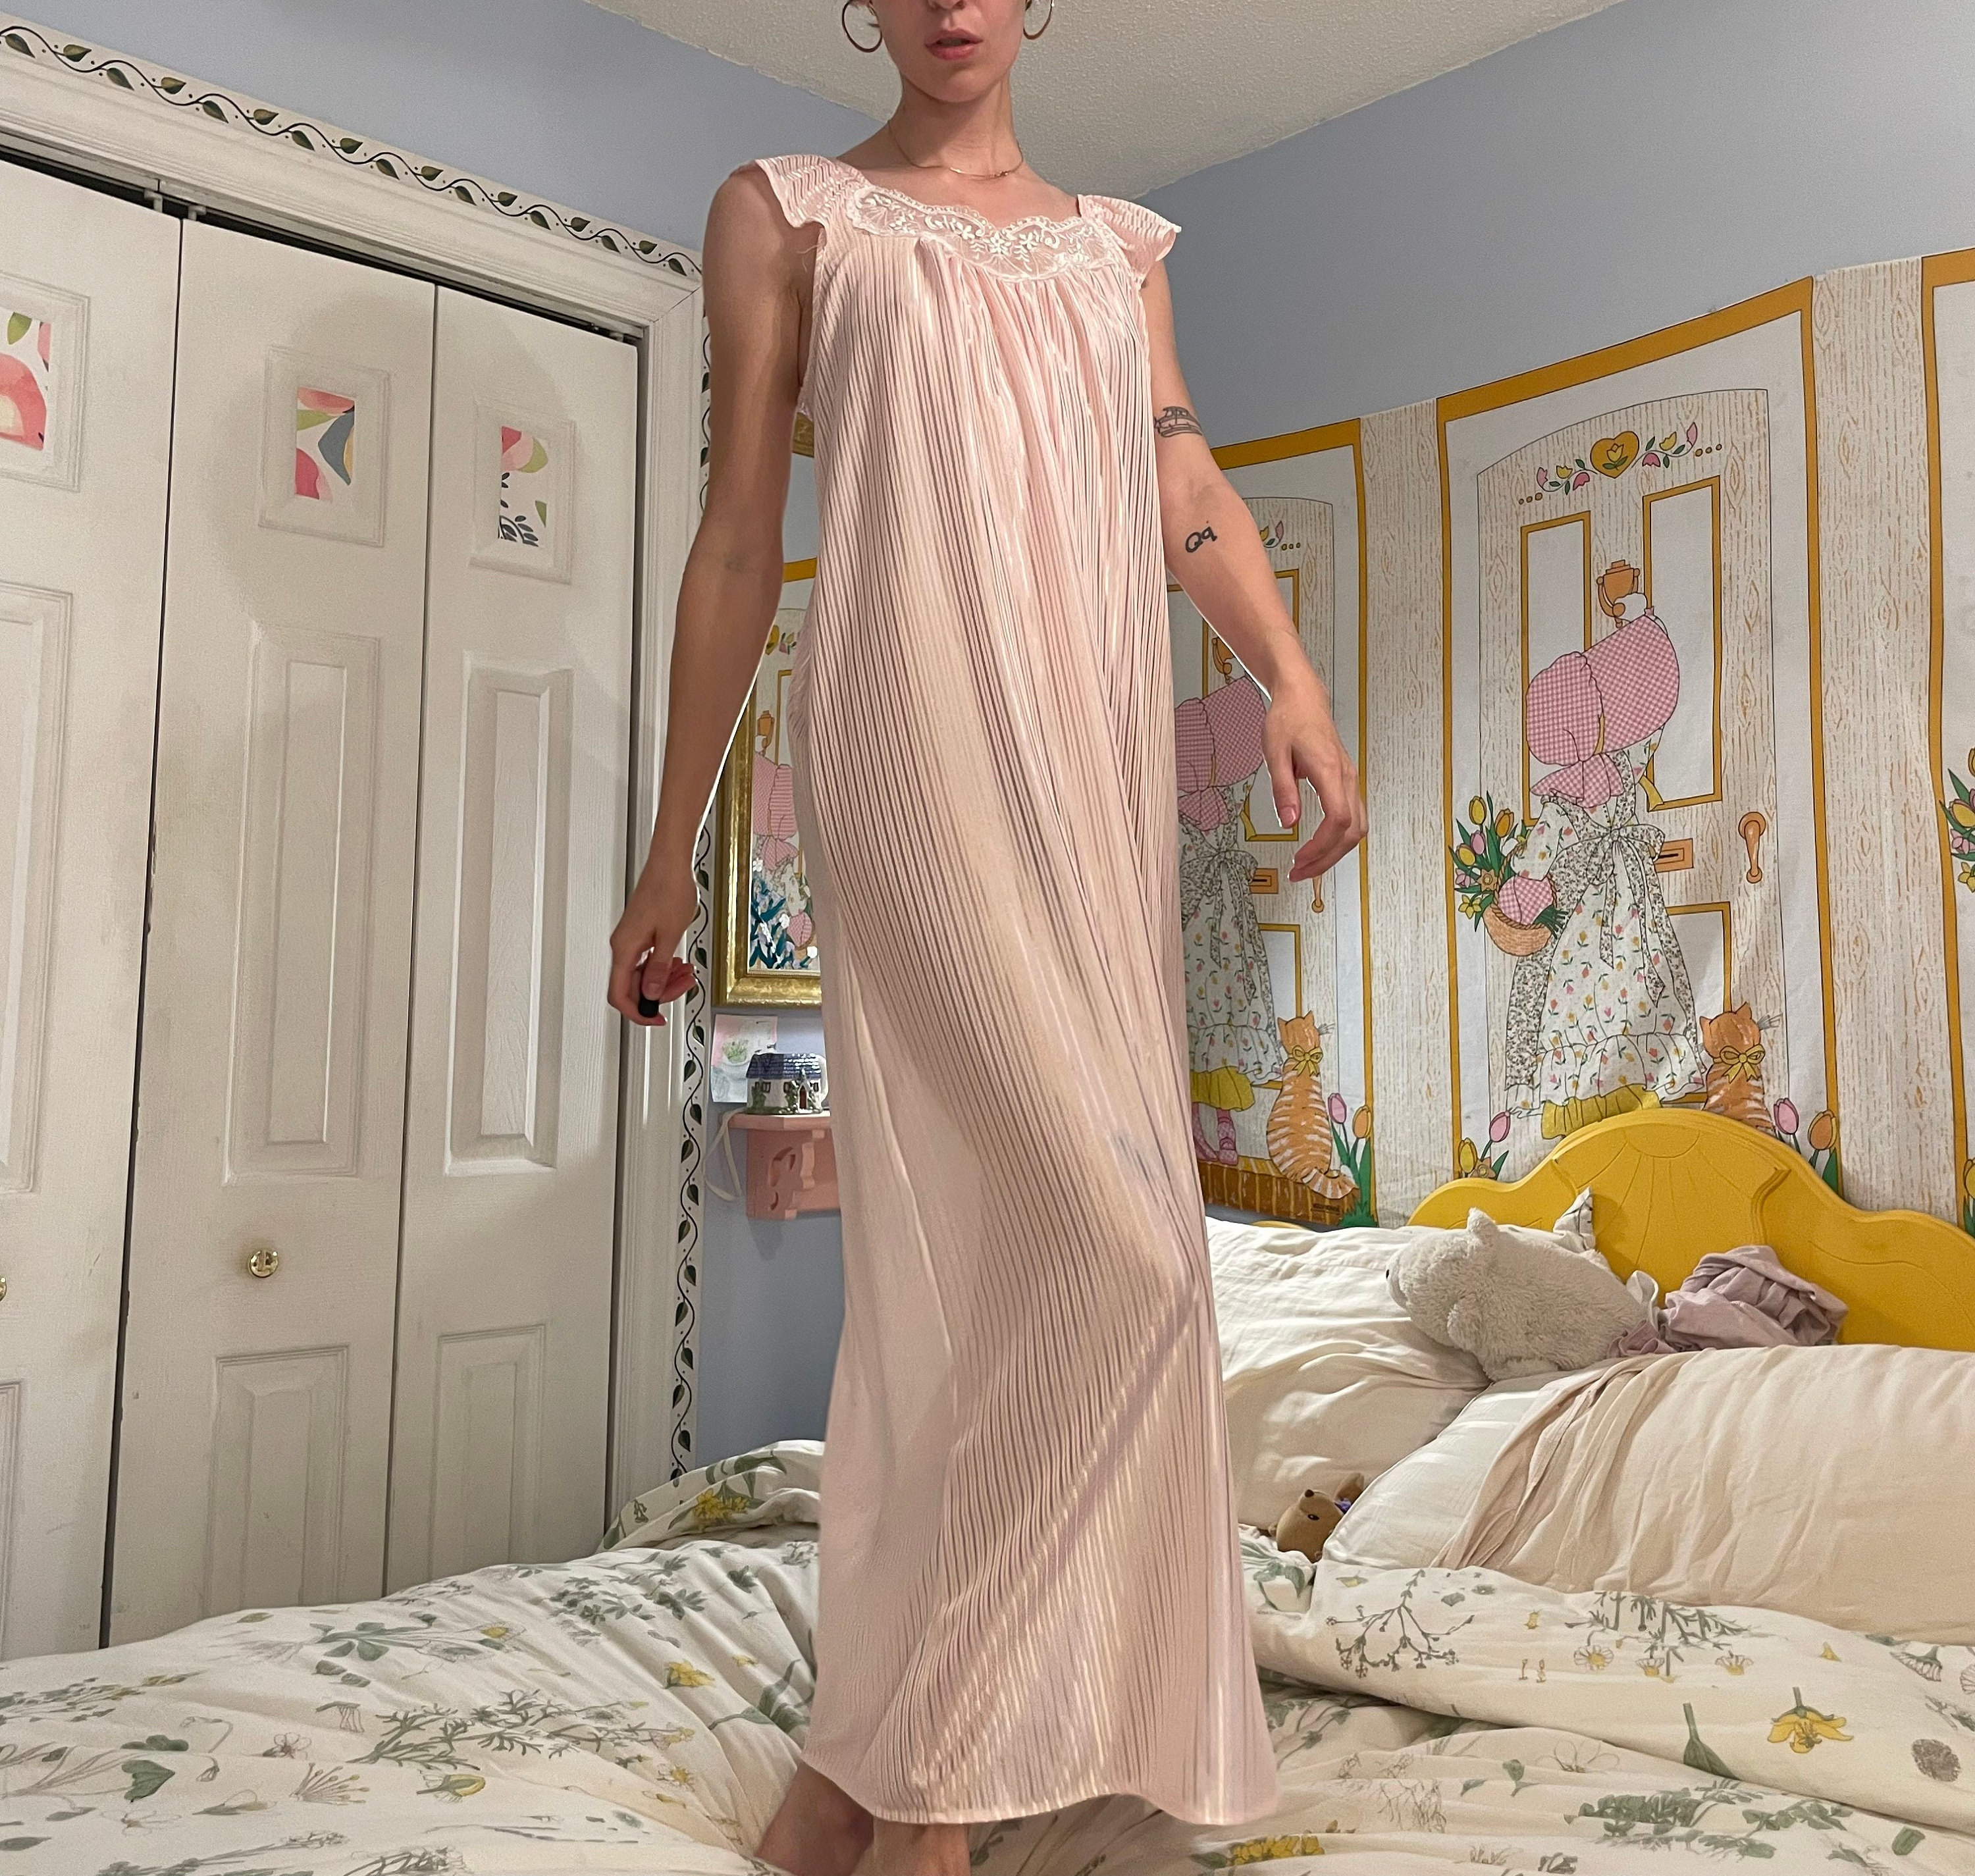 Mrat Pajamas for Women Lace Lingerie Nightwear Sleepwear Sets for Women  Satin Nightgown Nightgown with Built in Bra Bathrobe Underwear Robe  Sleepwear Dress Dark Blue XL 